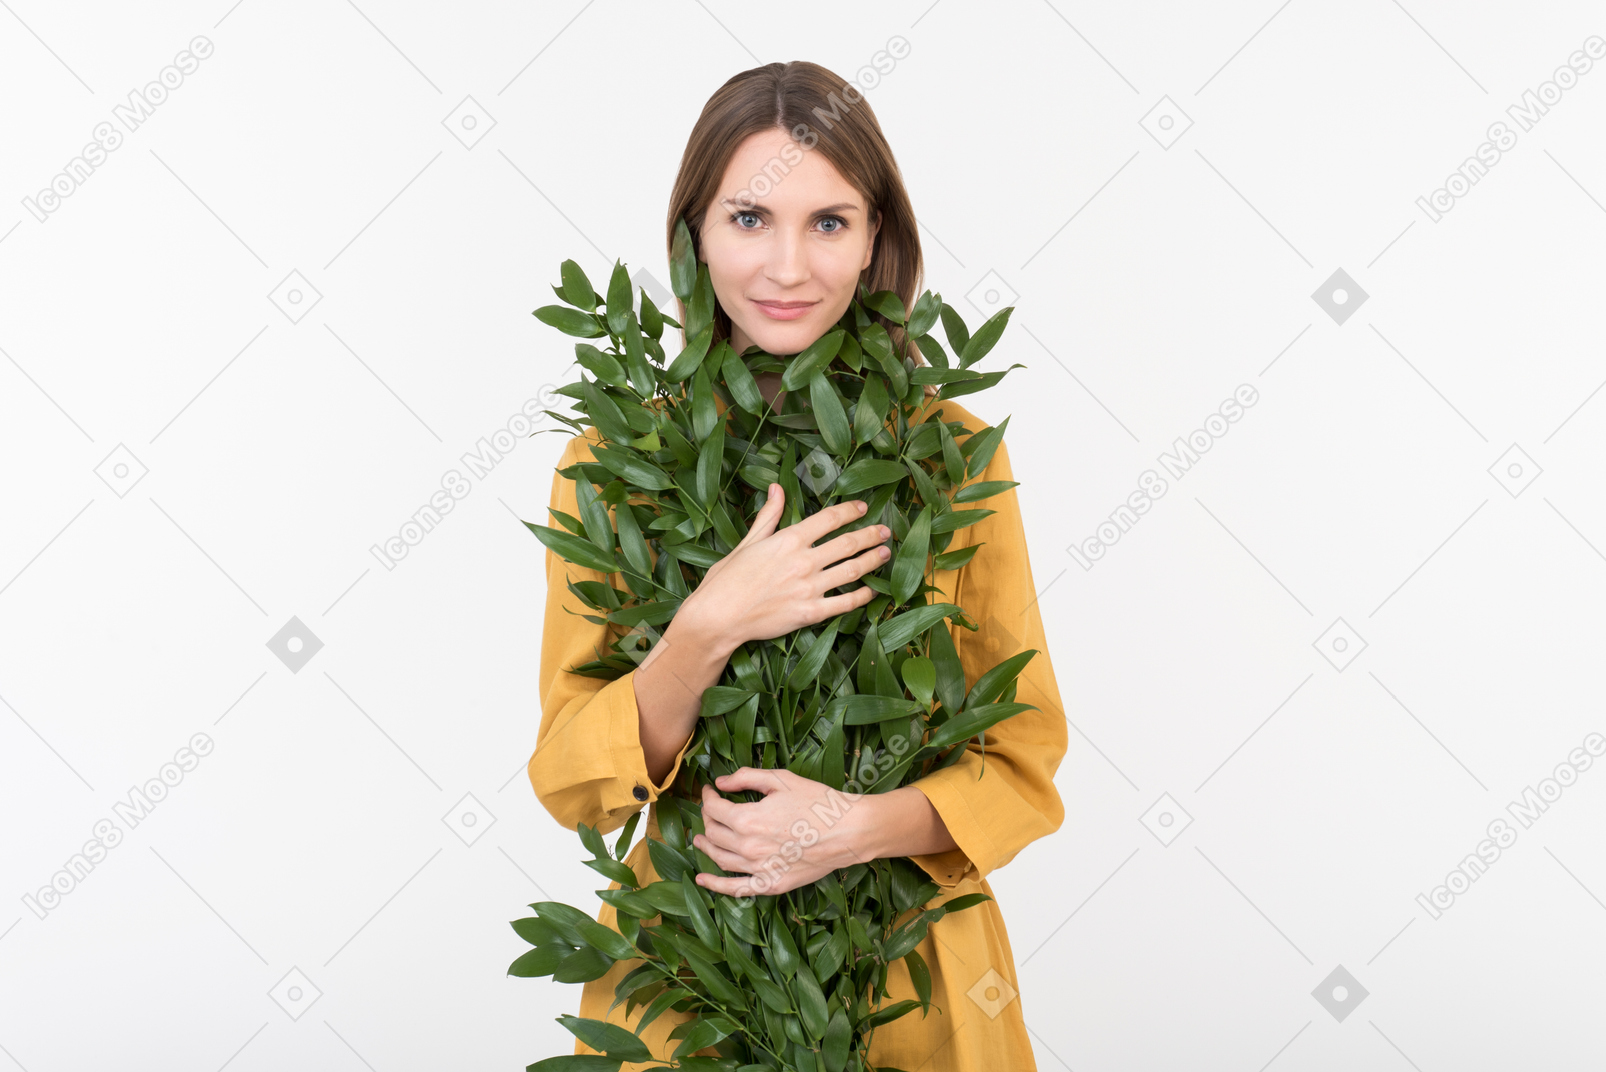 Jeune femme étreignant des branches vertes